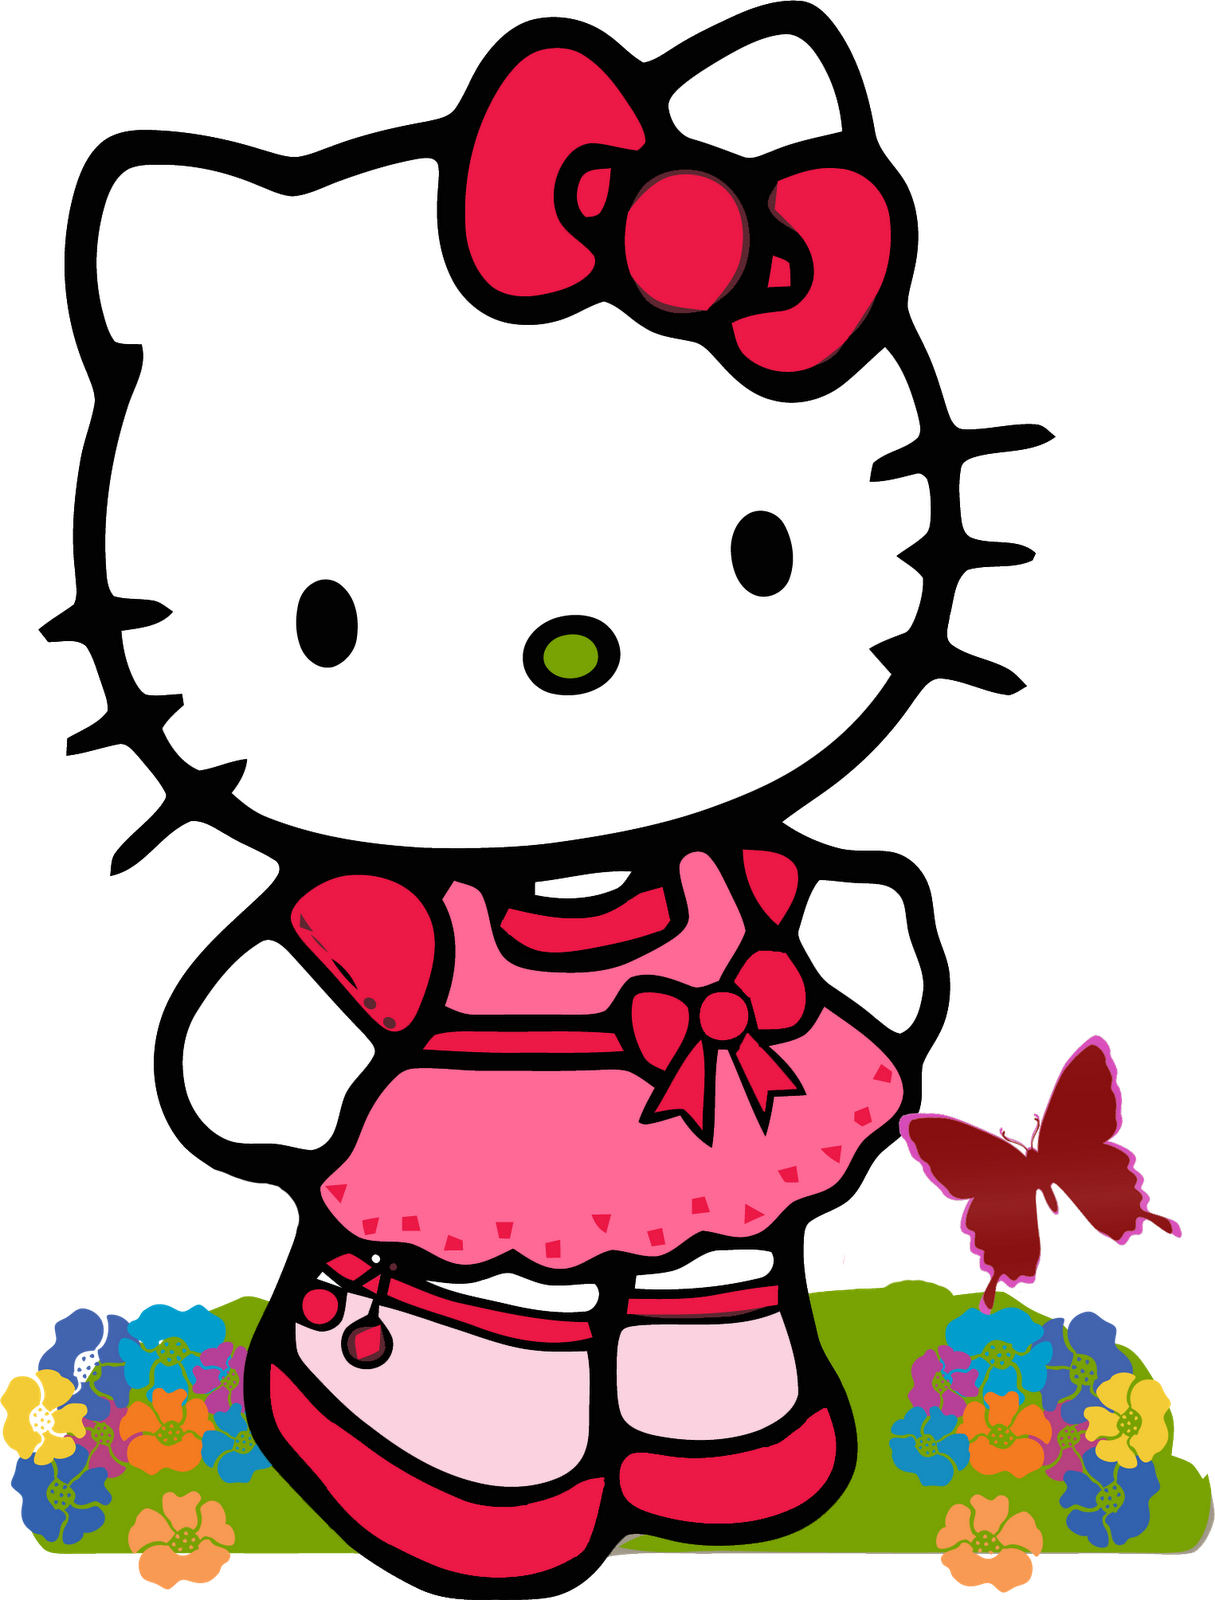  Hello  Kitty  Imagenes de Hello  Kitty  Bonitas